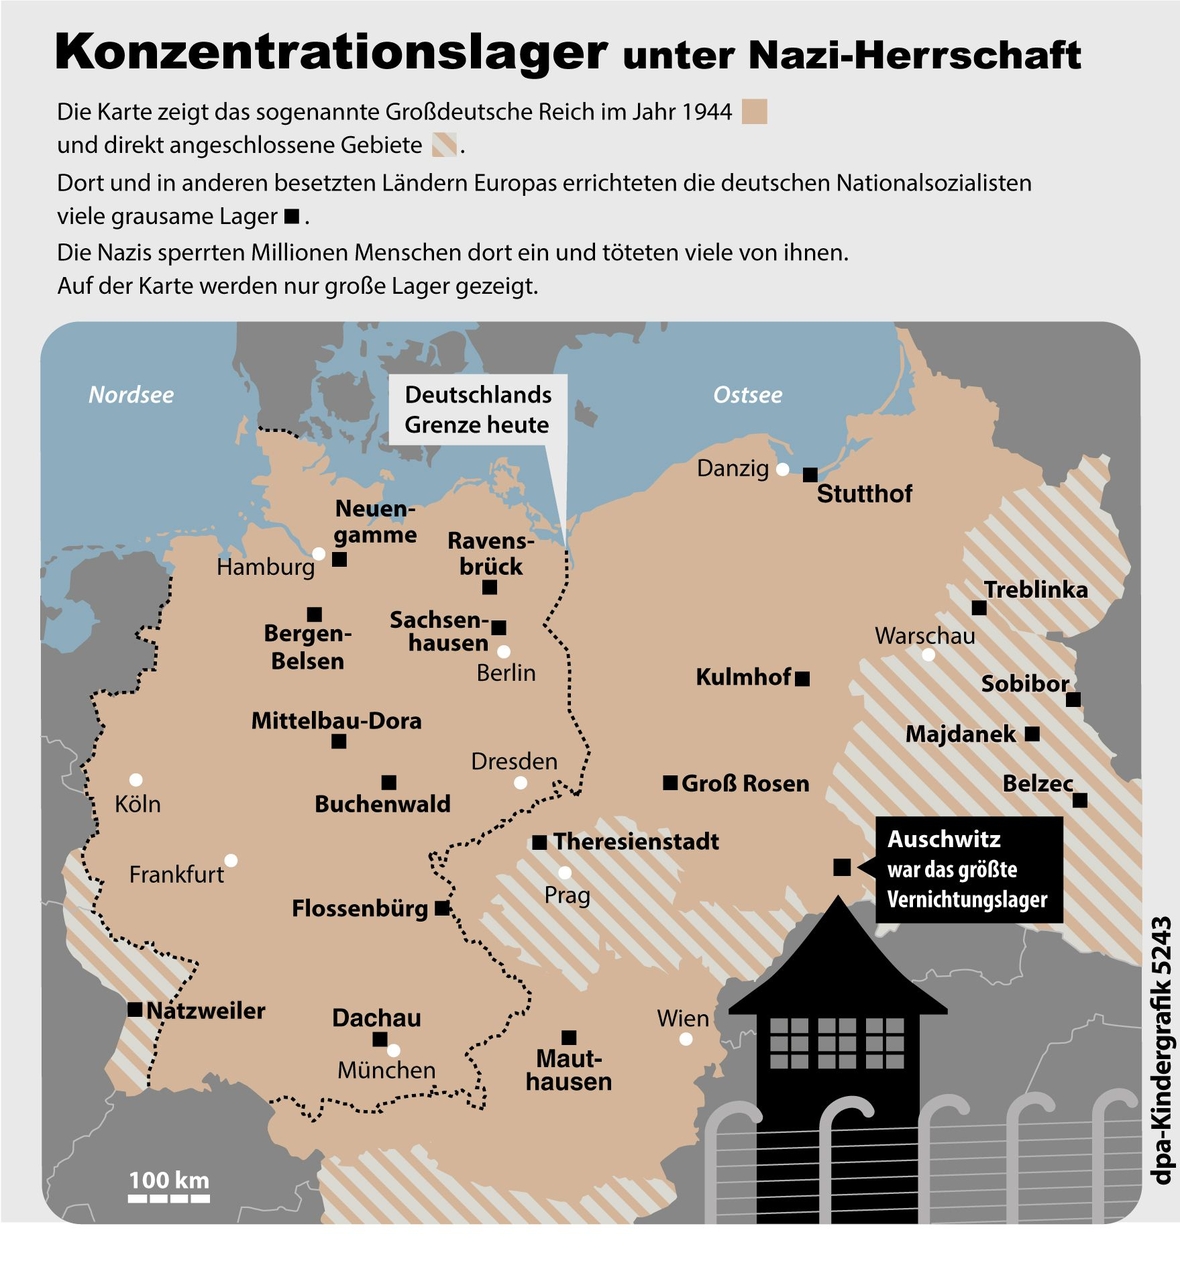 Übersicht über die großen Konzentrationslager während der Herrschaft der Nationalsozialisten.